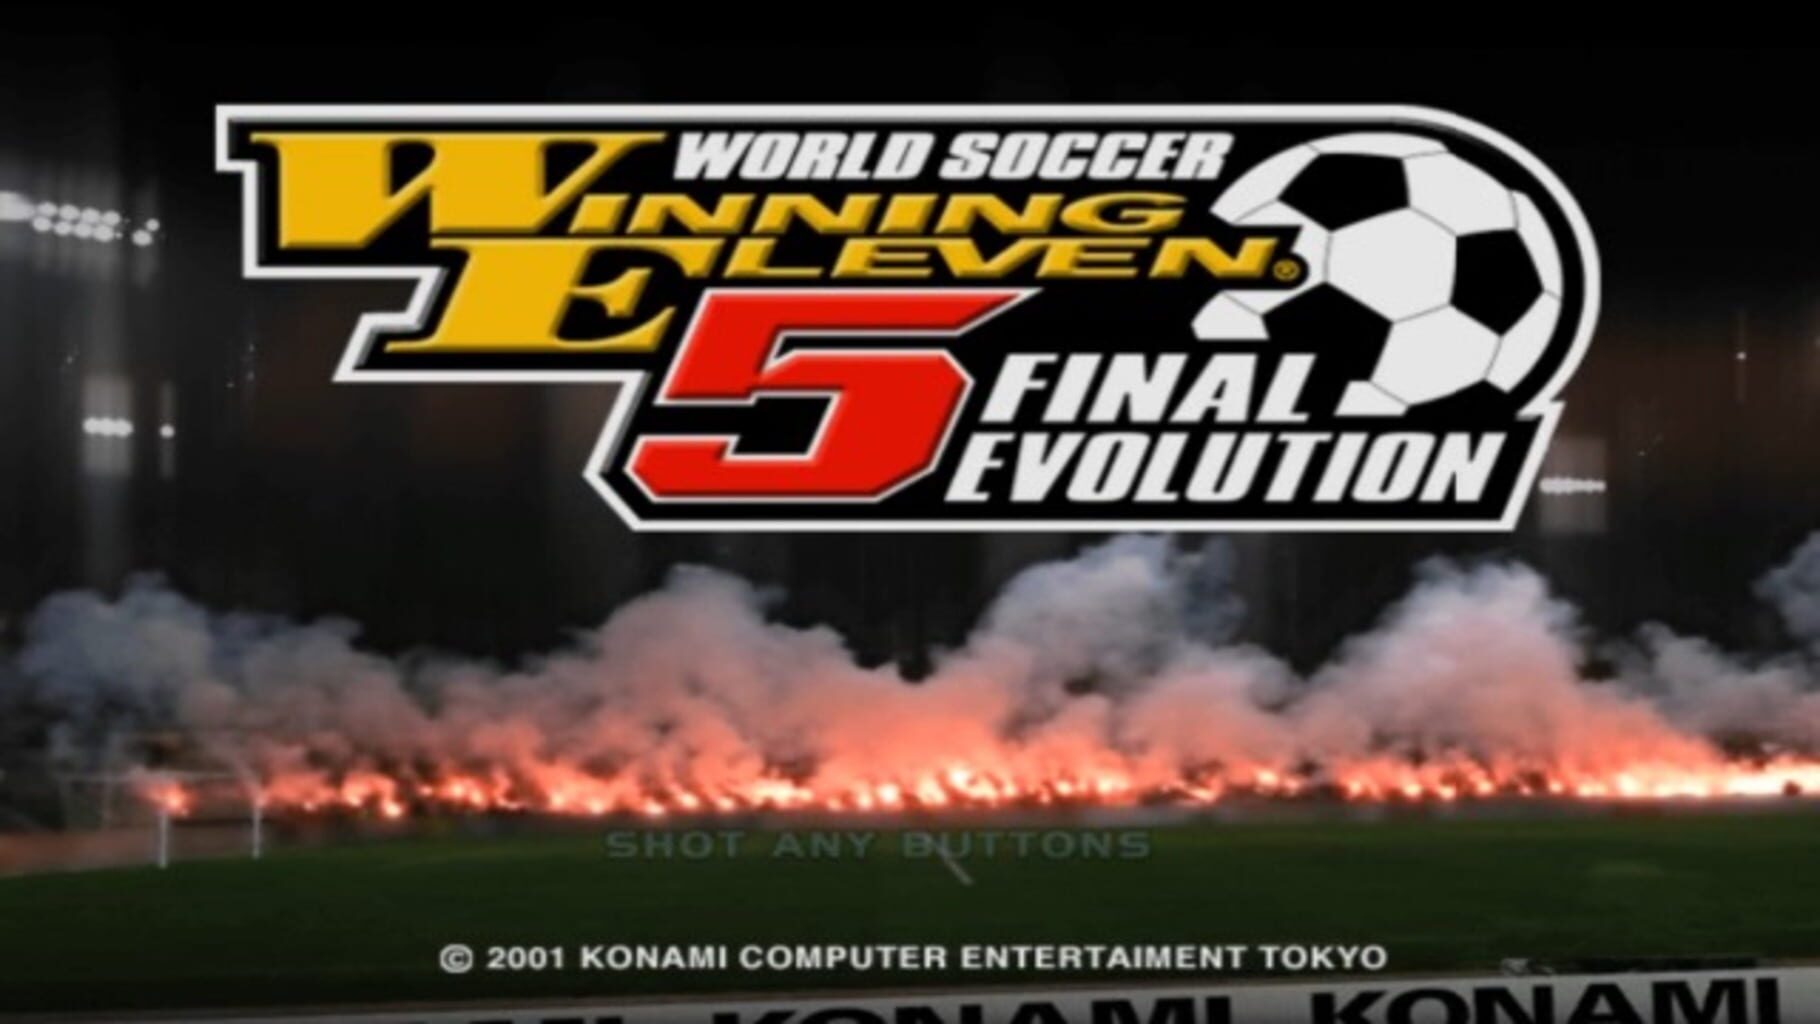 World Soccer Winning Eleven 5: Final Evolution Image